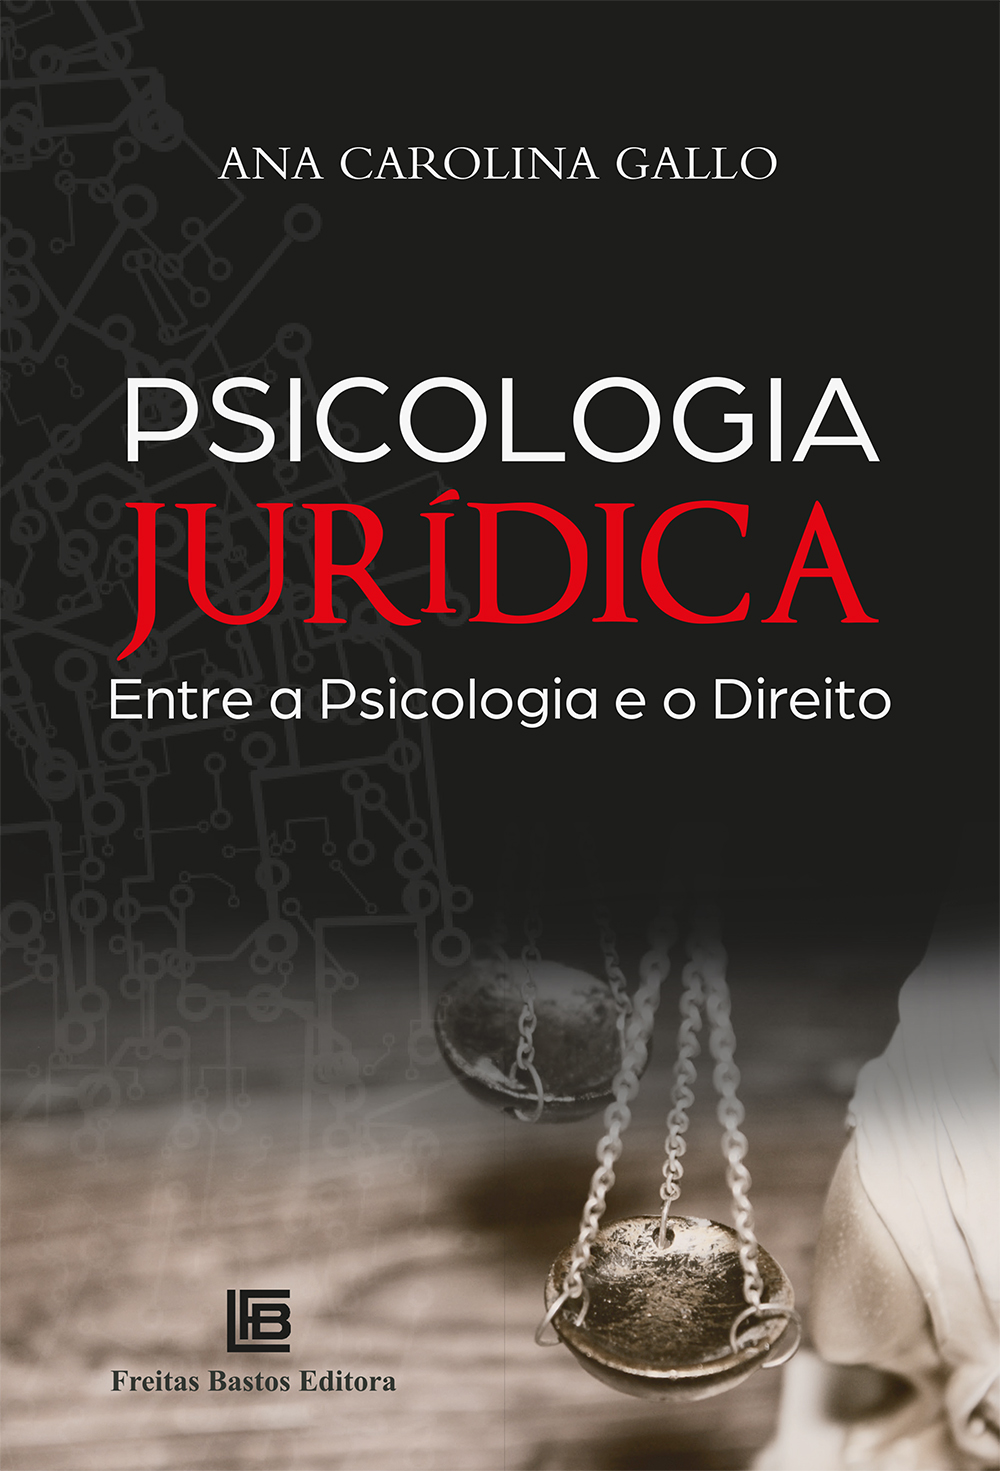 Psicologia Jurídica: Entre a Psicologia e o Direito